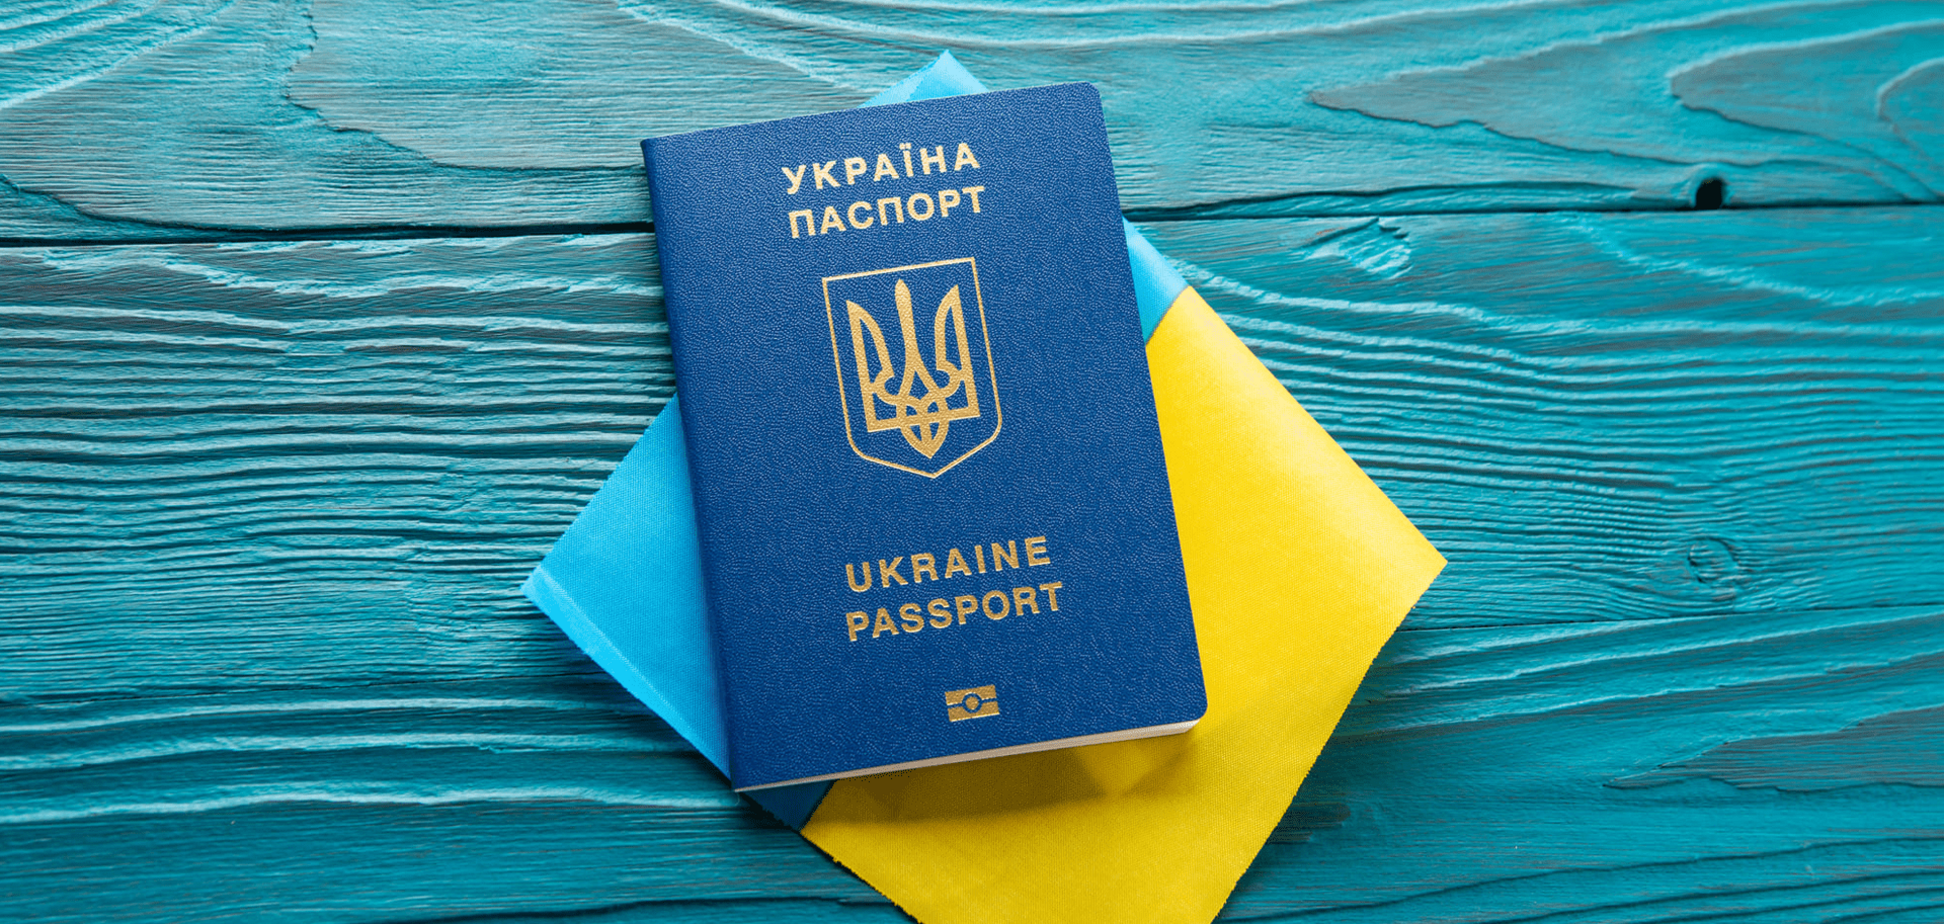 Кабмин запретил выдавать паспорта украинским мужчинам от 18 до 60 лет за границей. Постановление